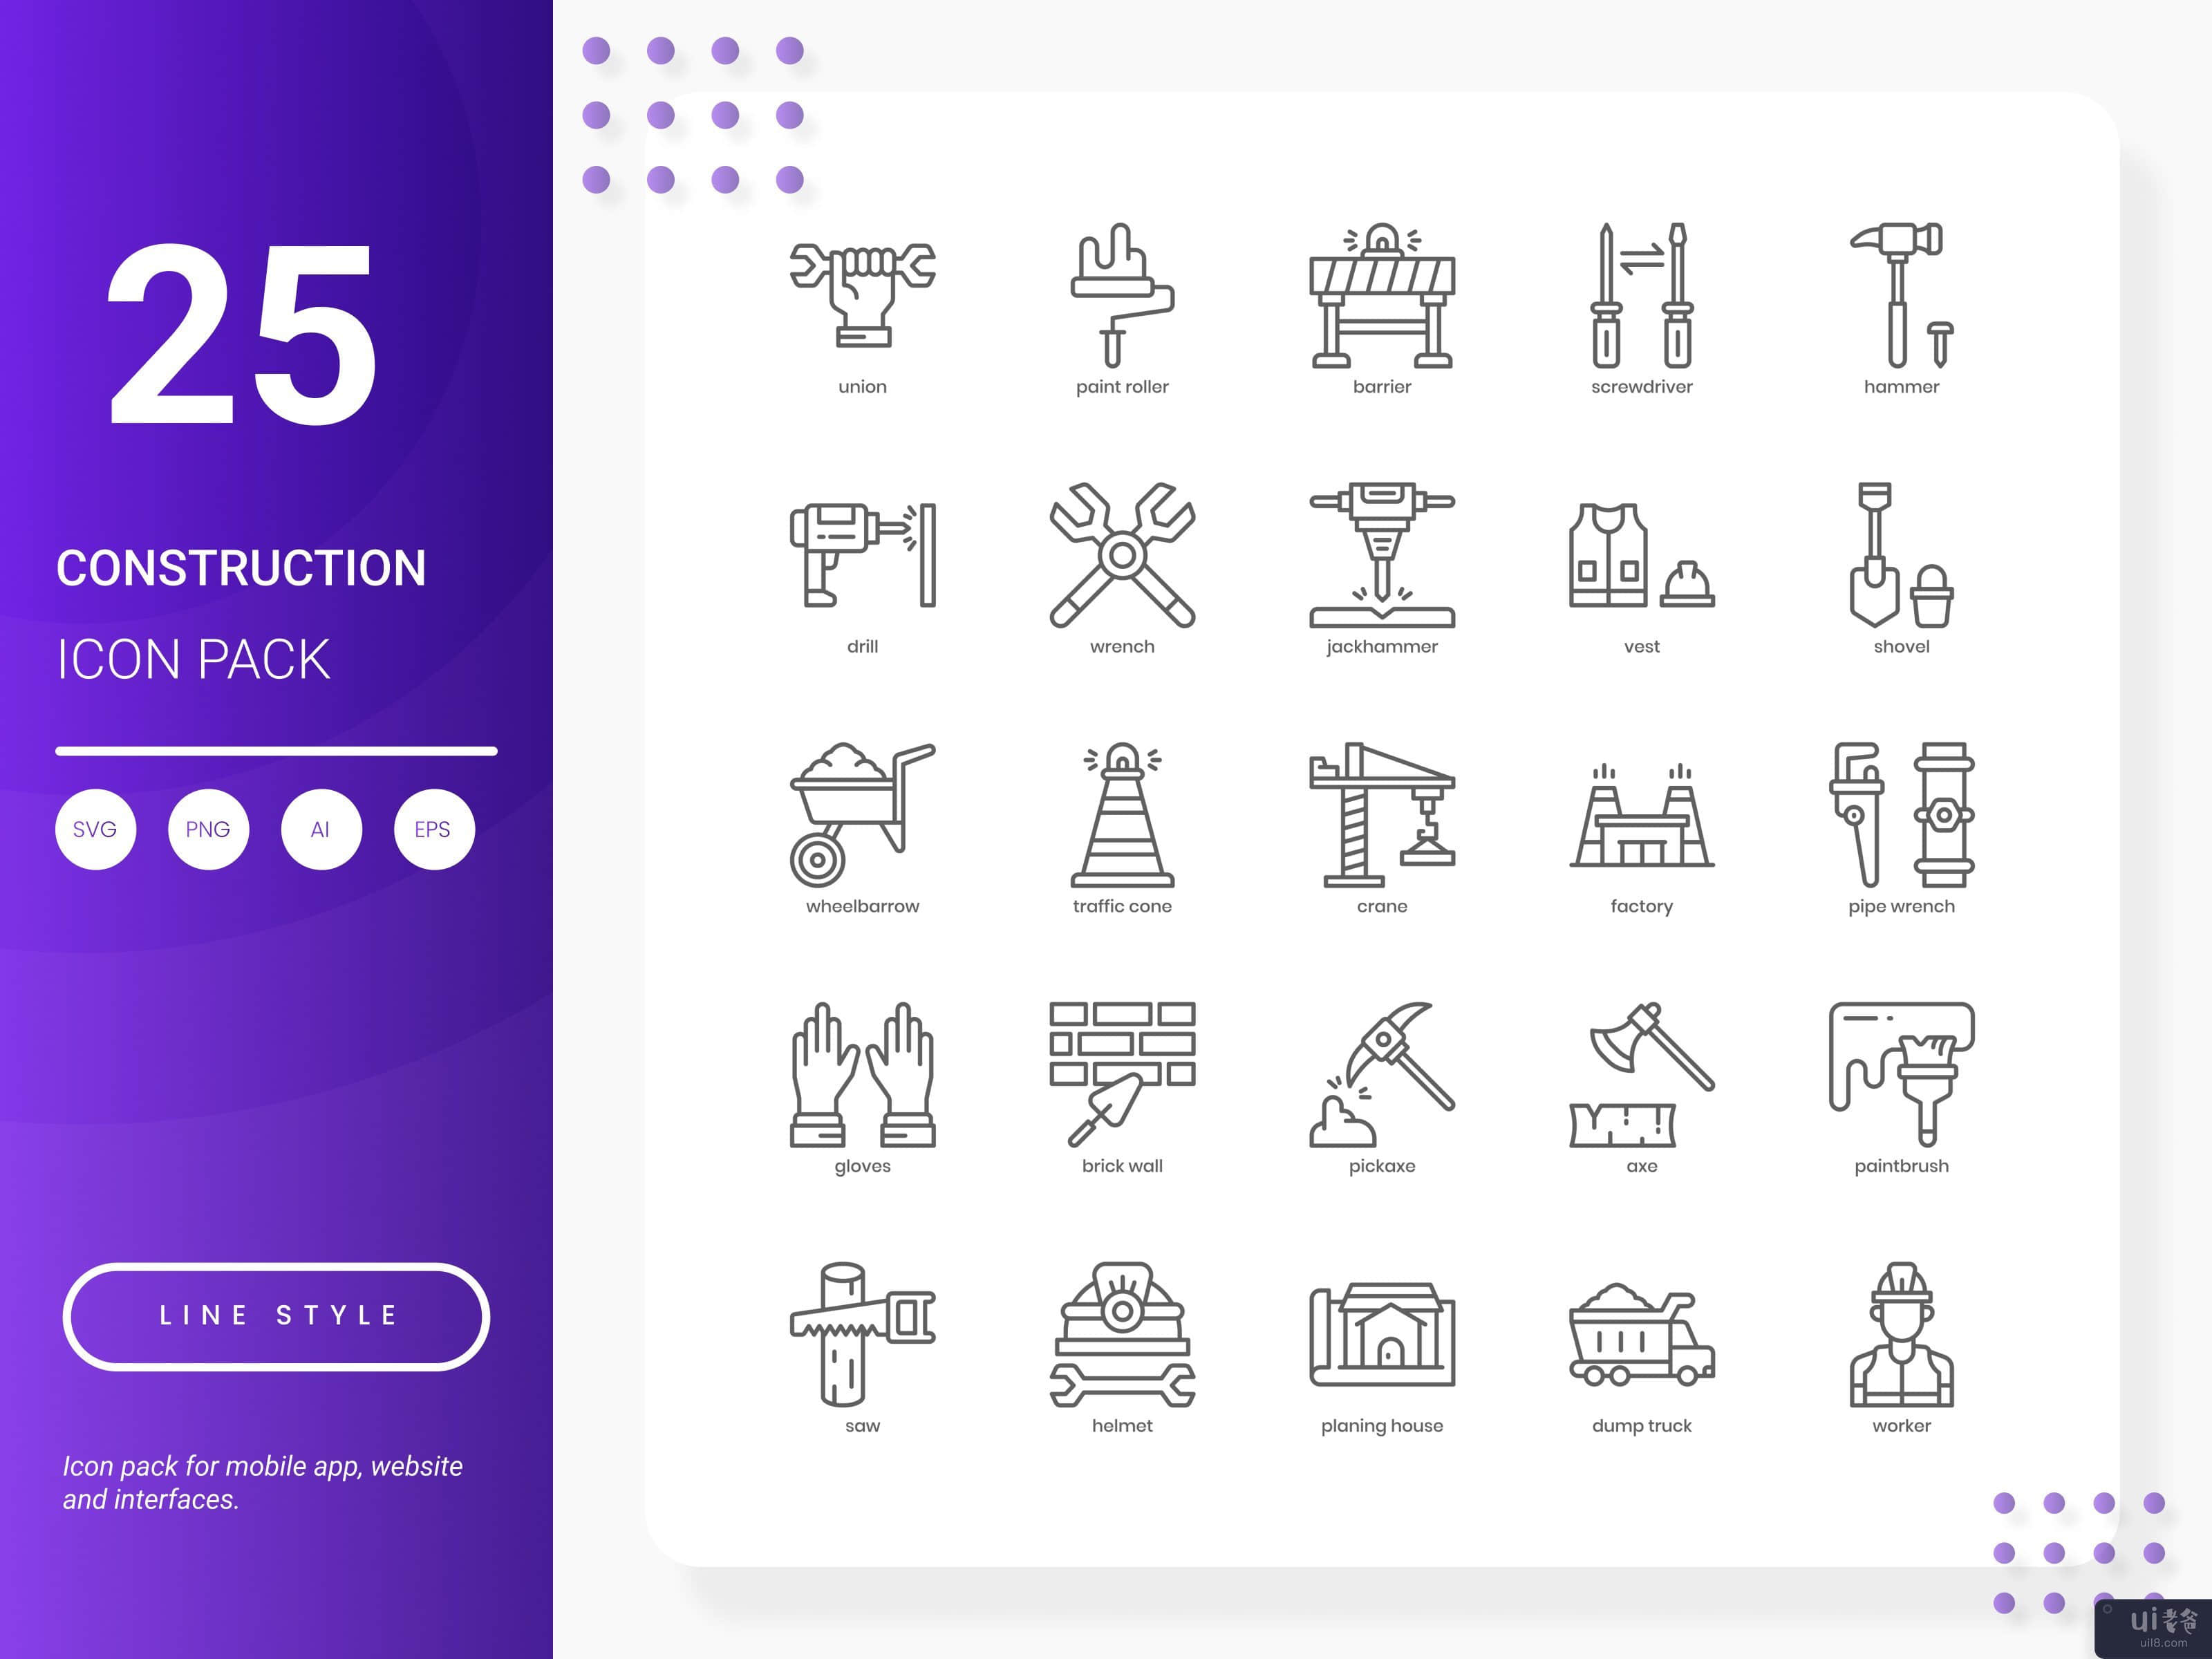 建筑图标包(Construction Icon Pack)插图2